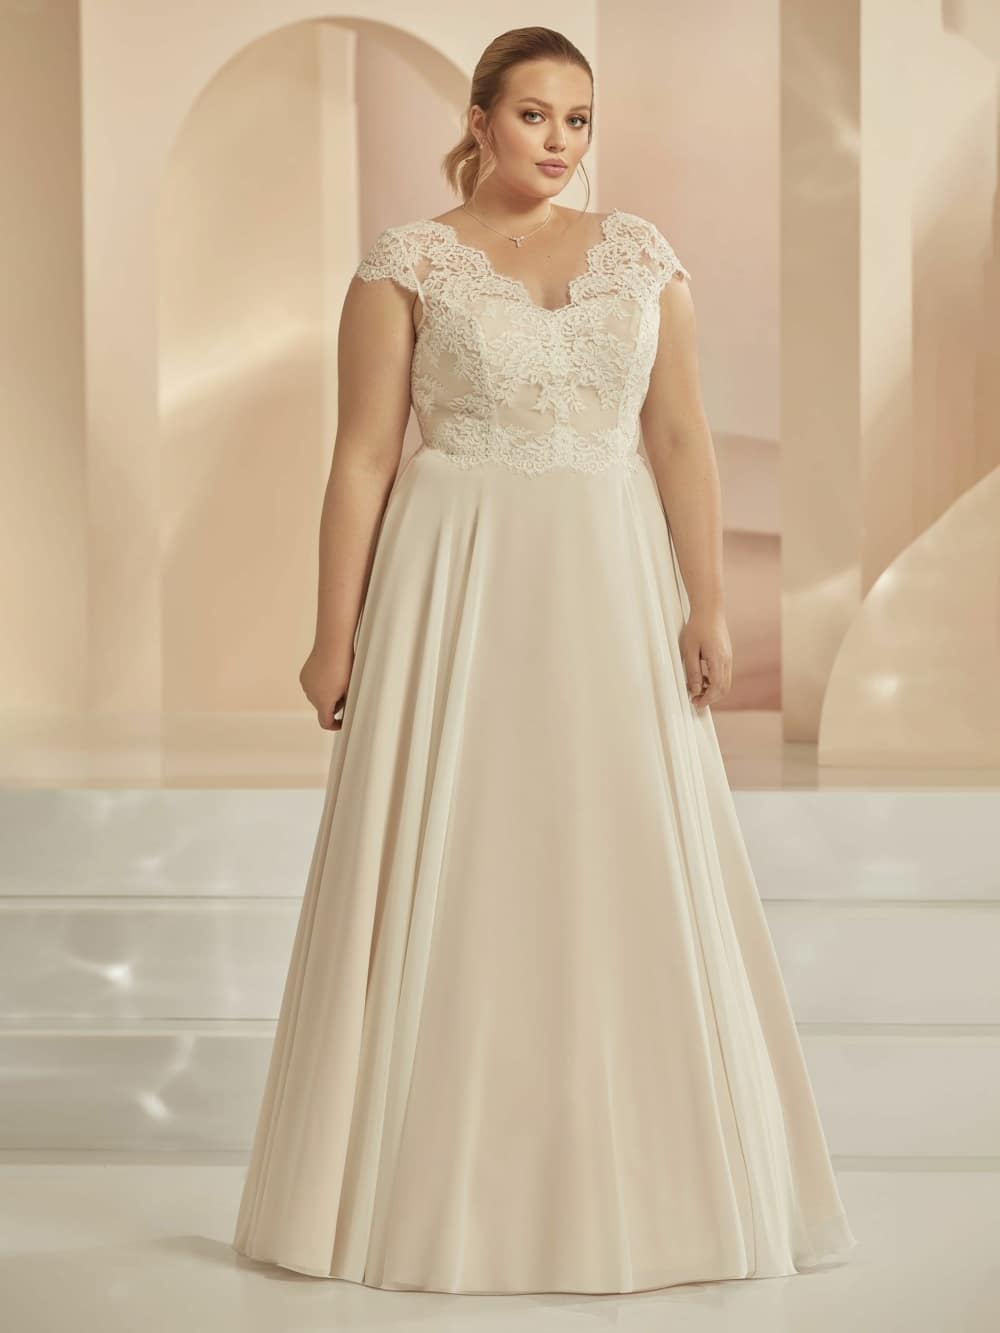 Hochzeitskleid xxl - Die hochwertigsten Hochzeitskleid xxl auf einen Blick!